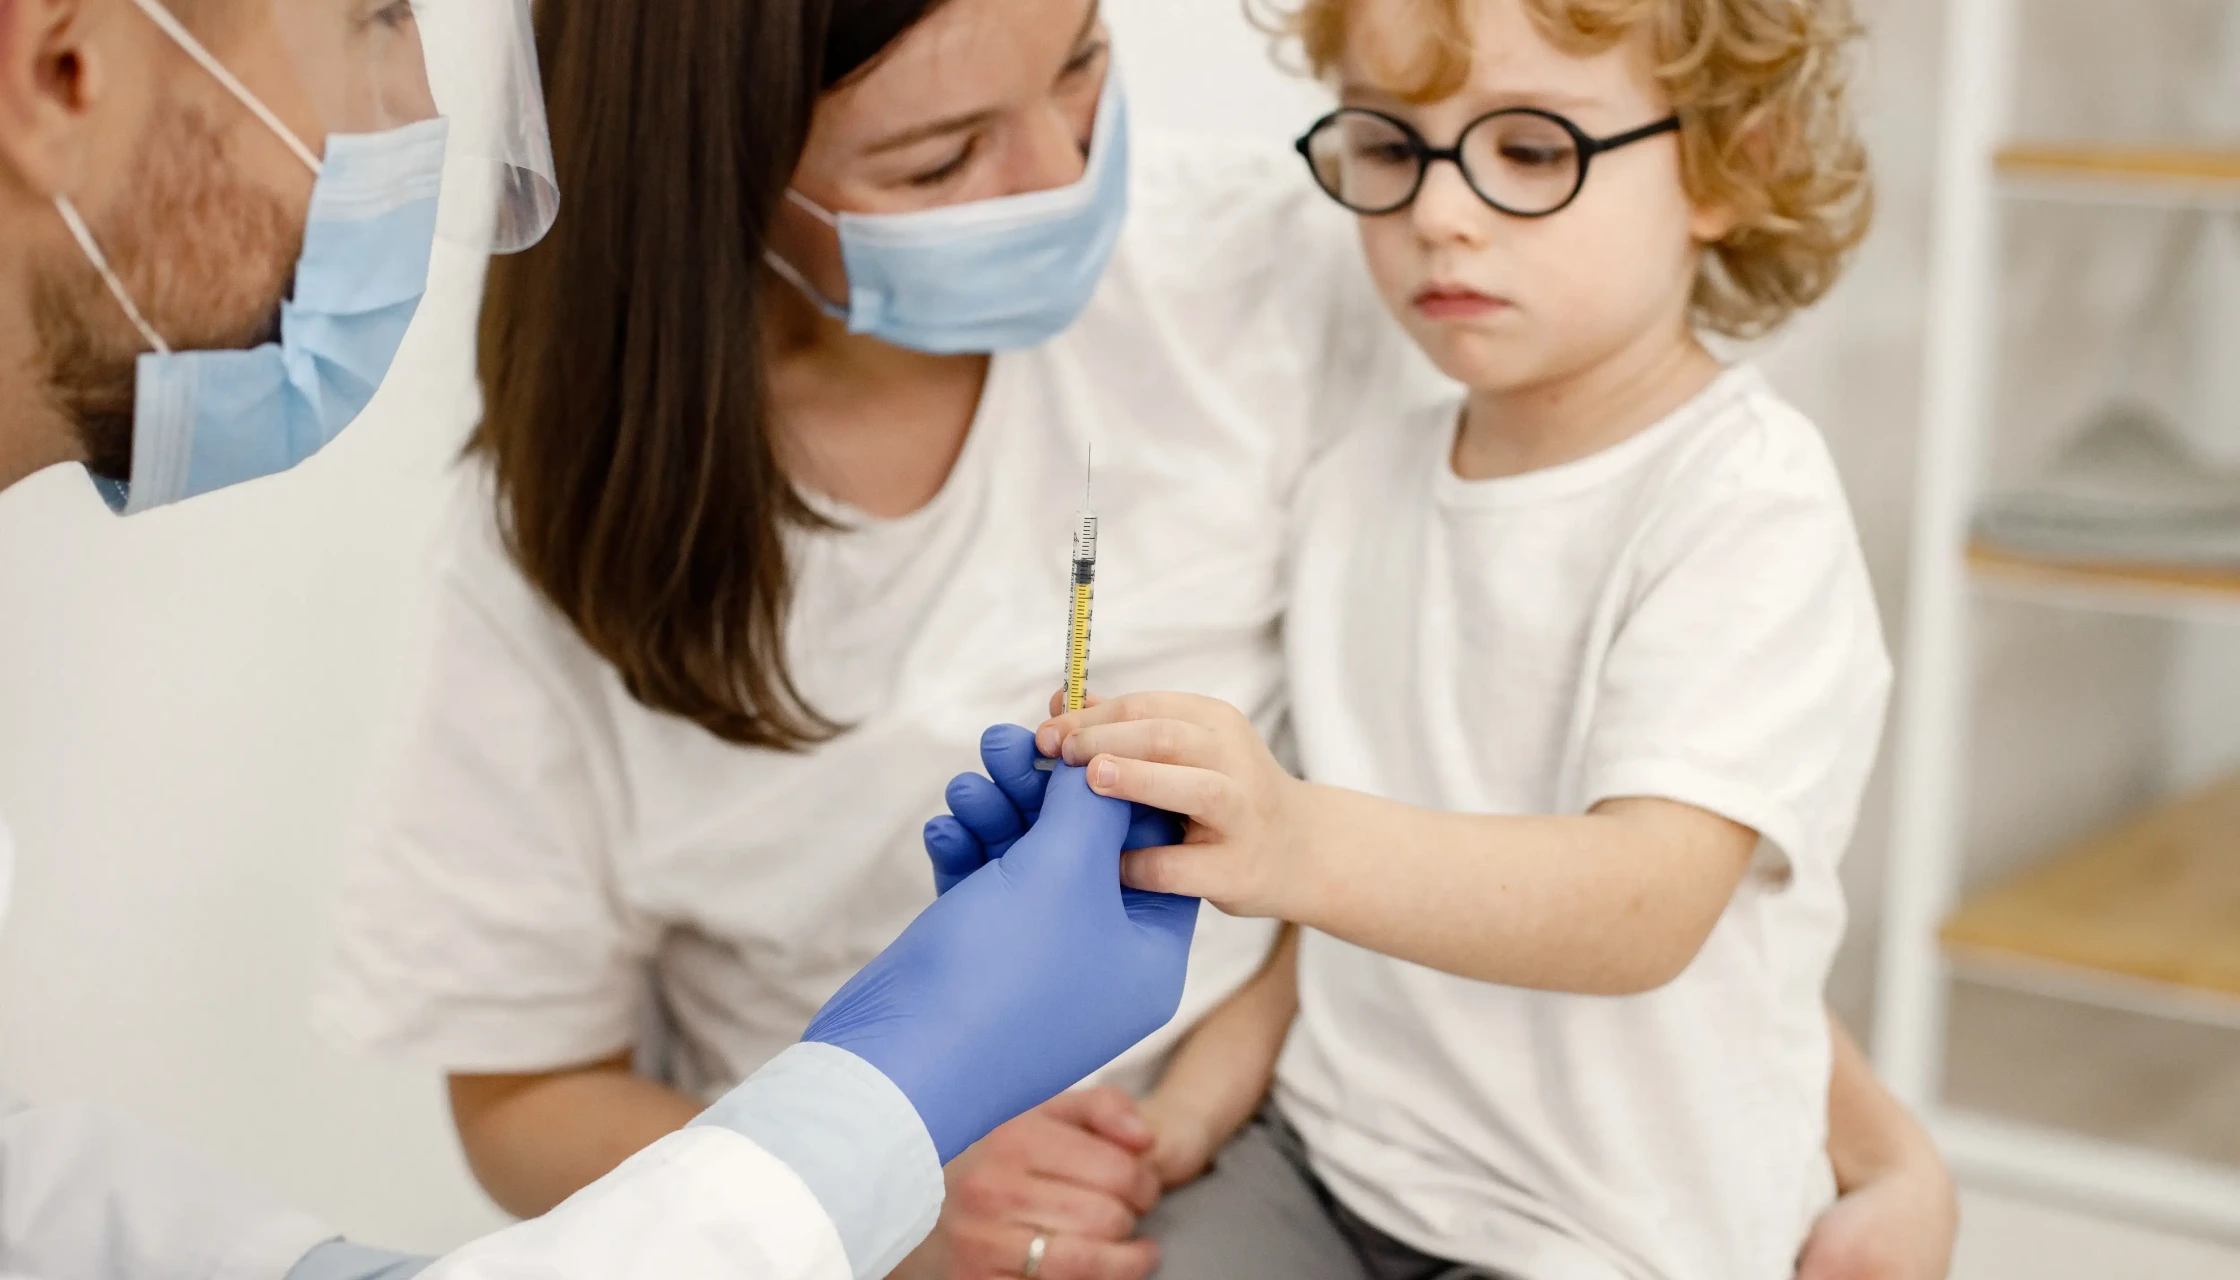 W Centrum Medycznym Doctorpro Wrocław można zrobić badania dzieciom od 6. miesiąca życia